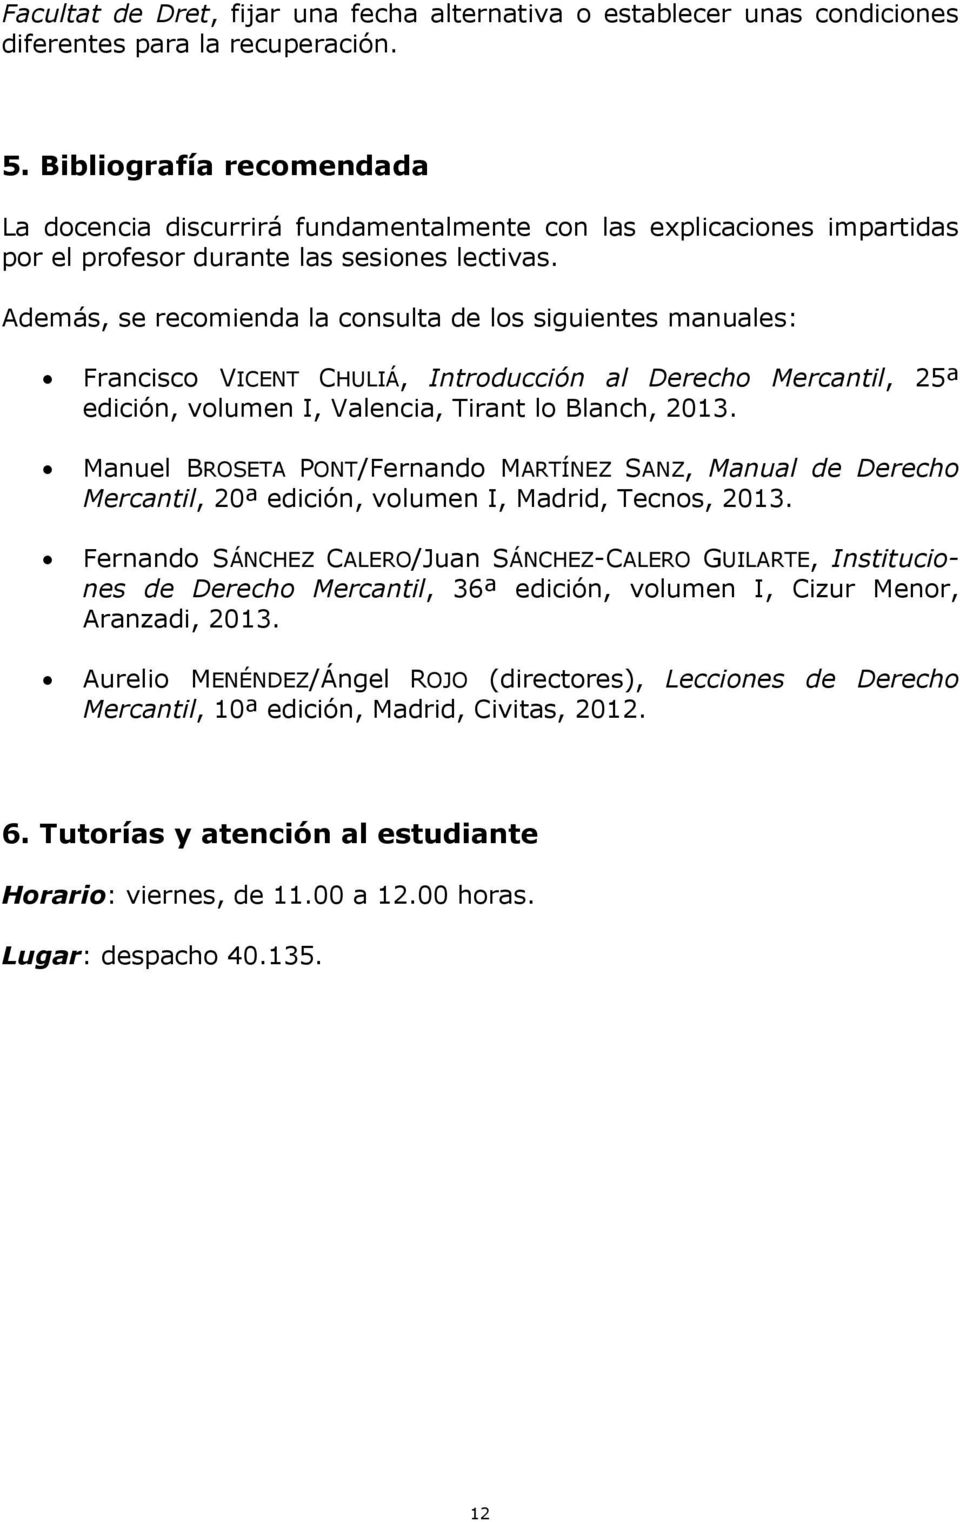 Además, se recomienda la consulta de los siguientes manuales: Francisco VICENT CHULIÁ, Introducción al Derecho Mercantil, 25ª edición, volumen I, Valencia, Tirant lo Blanch, 2013.